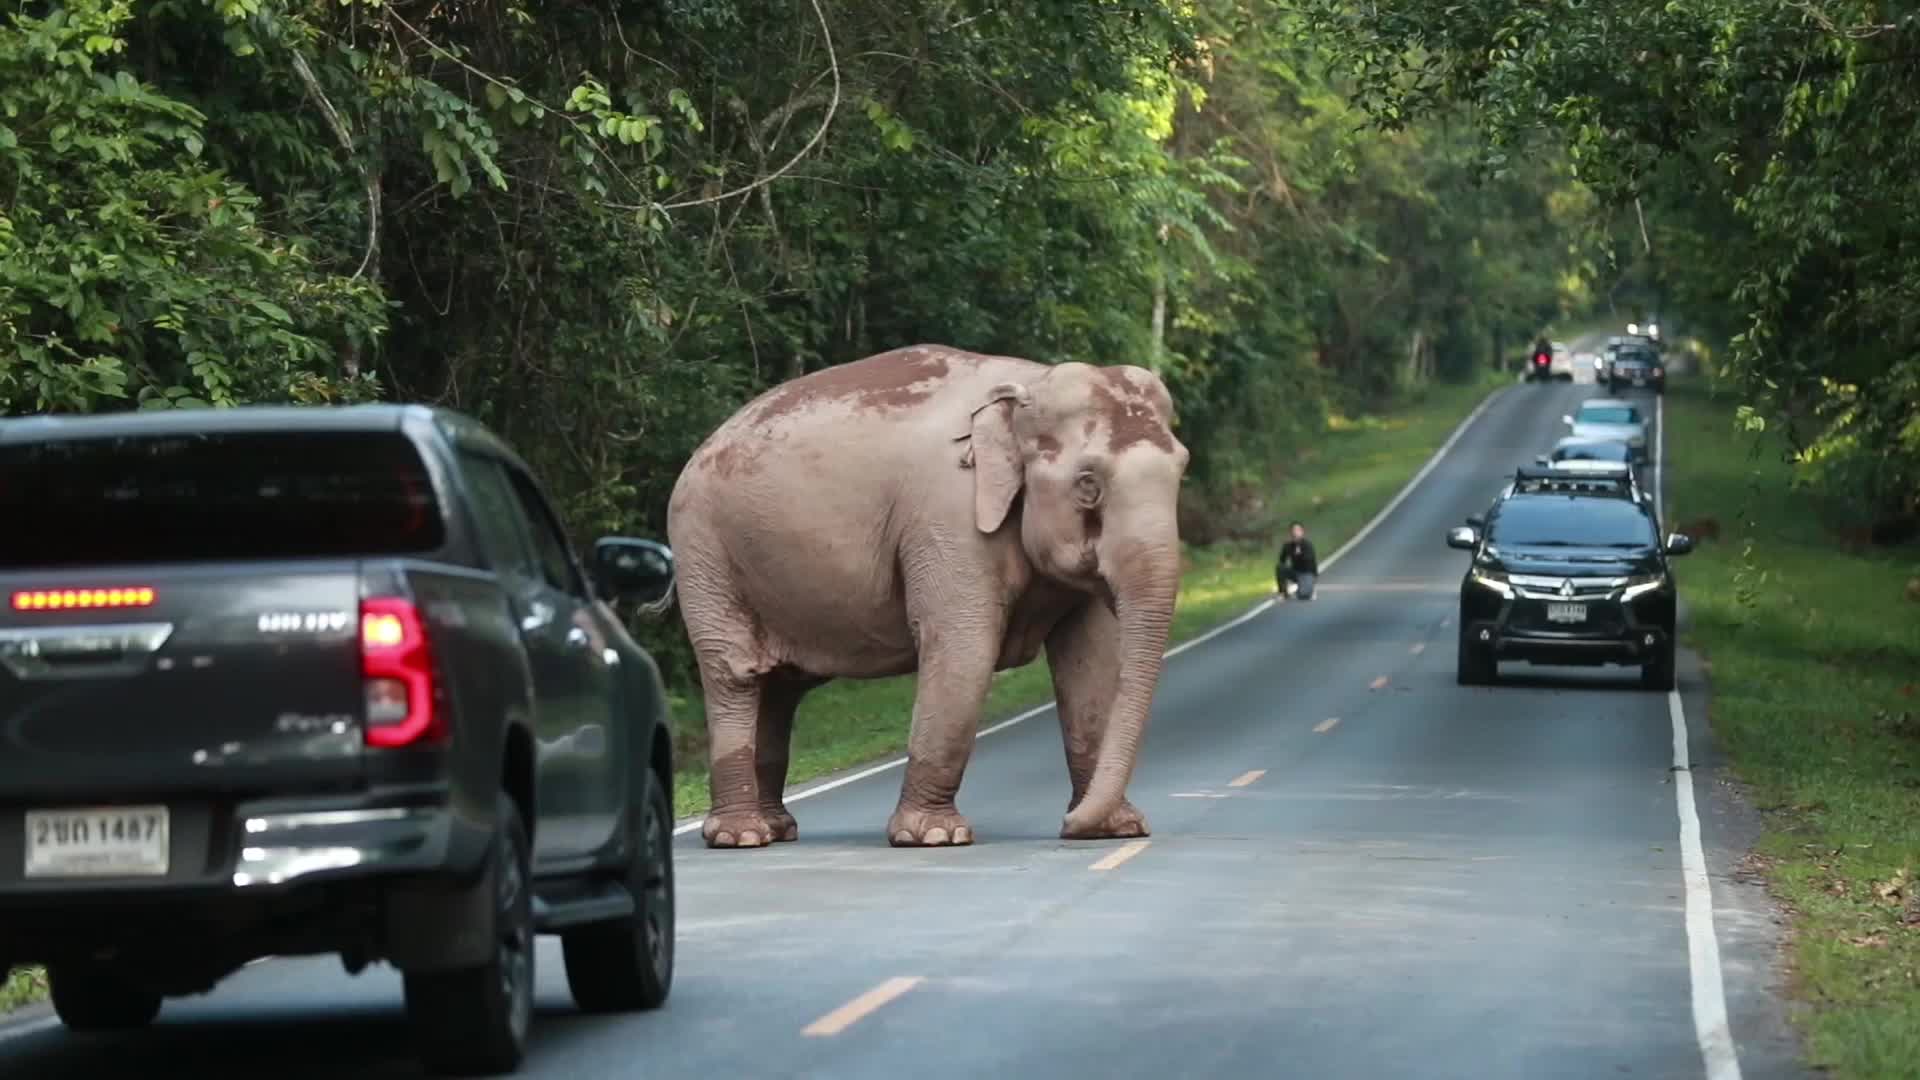 Video - Clip: Voi rừng cản trở giao thông trên đường nông thôn ở Thái Lan